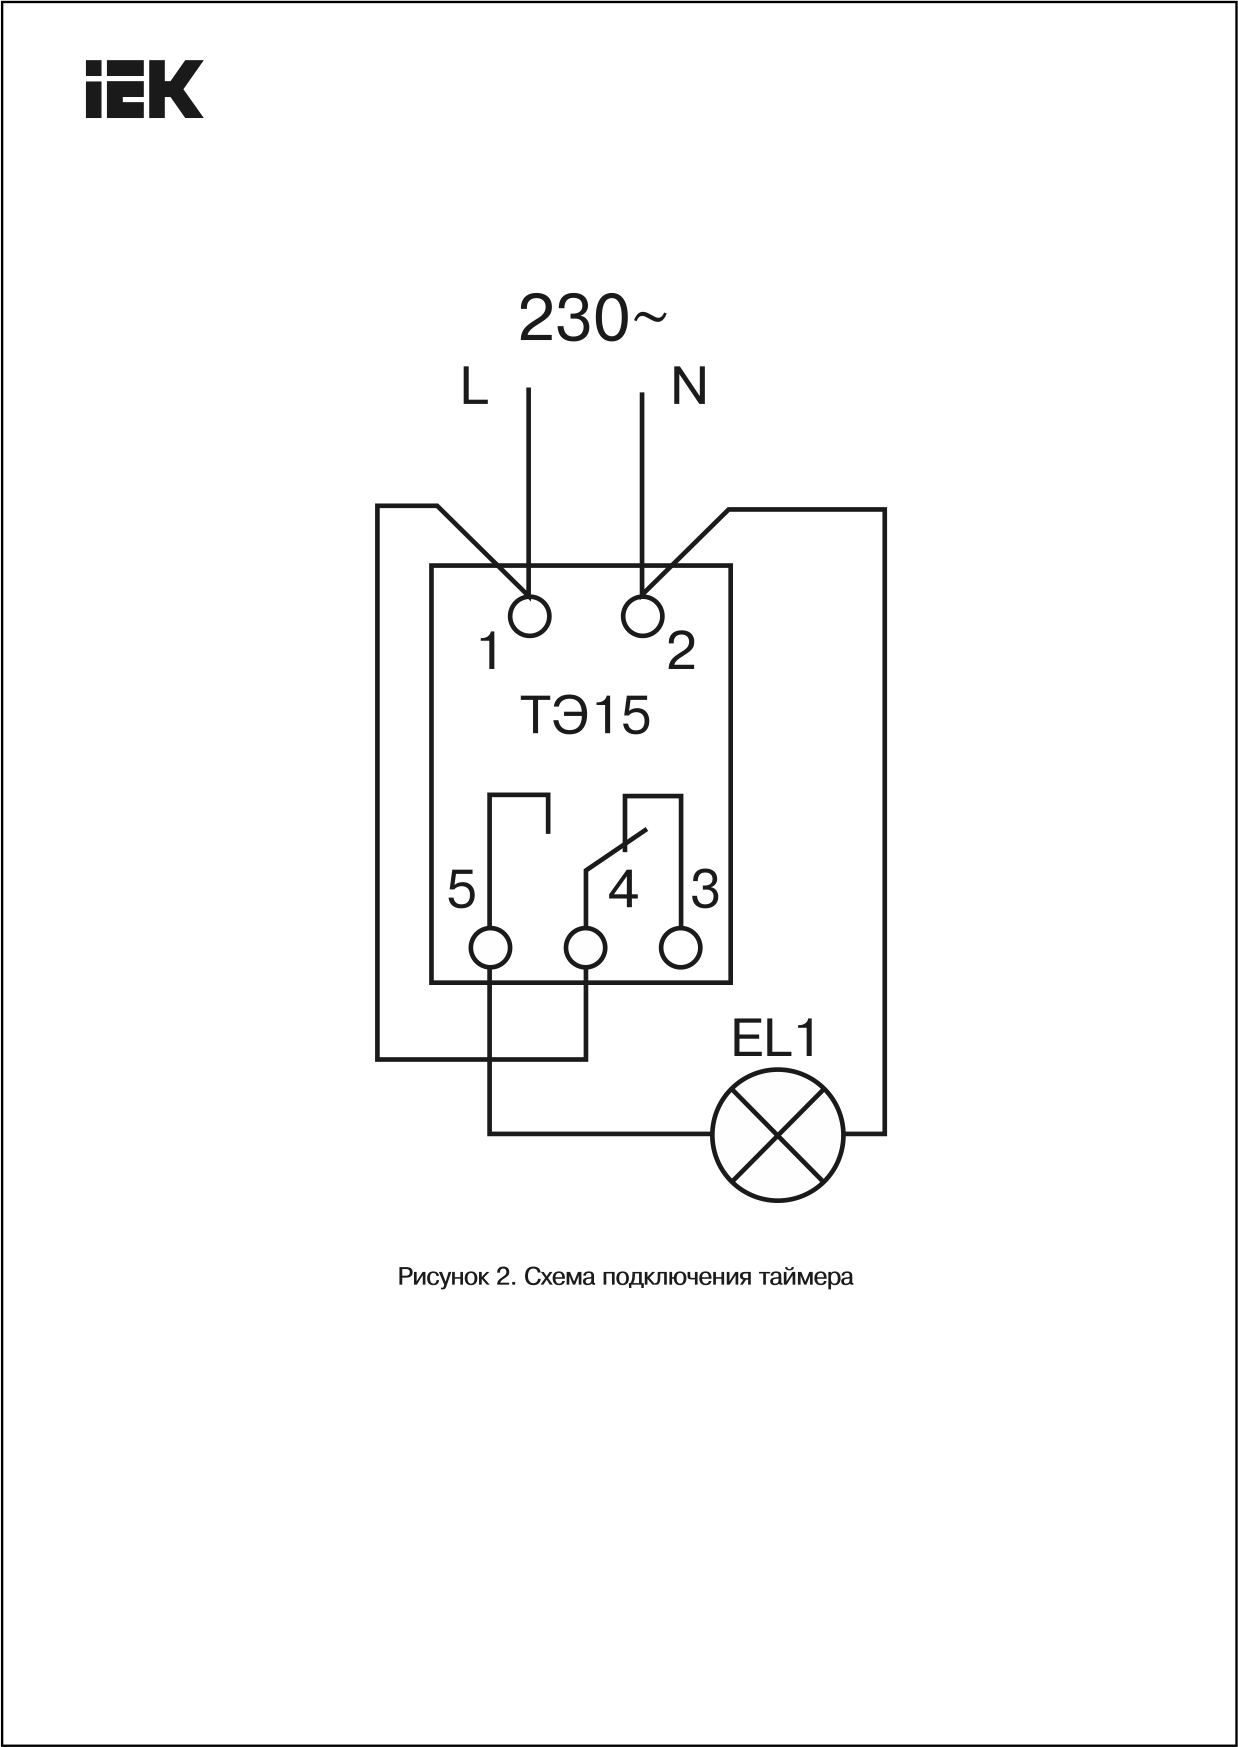 Недельный электронный таймер тэ-15. настройка и схема подключения. заметки электрика 18:21 hd